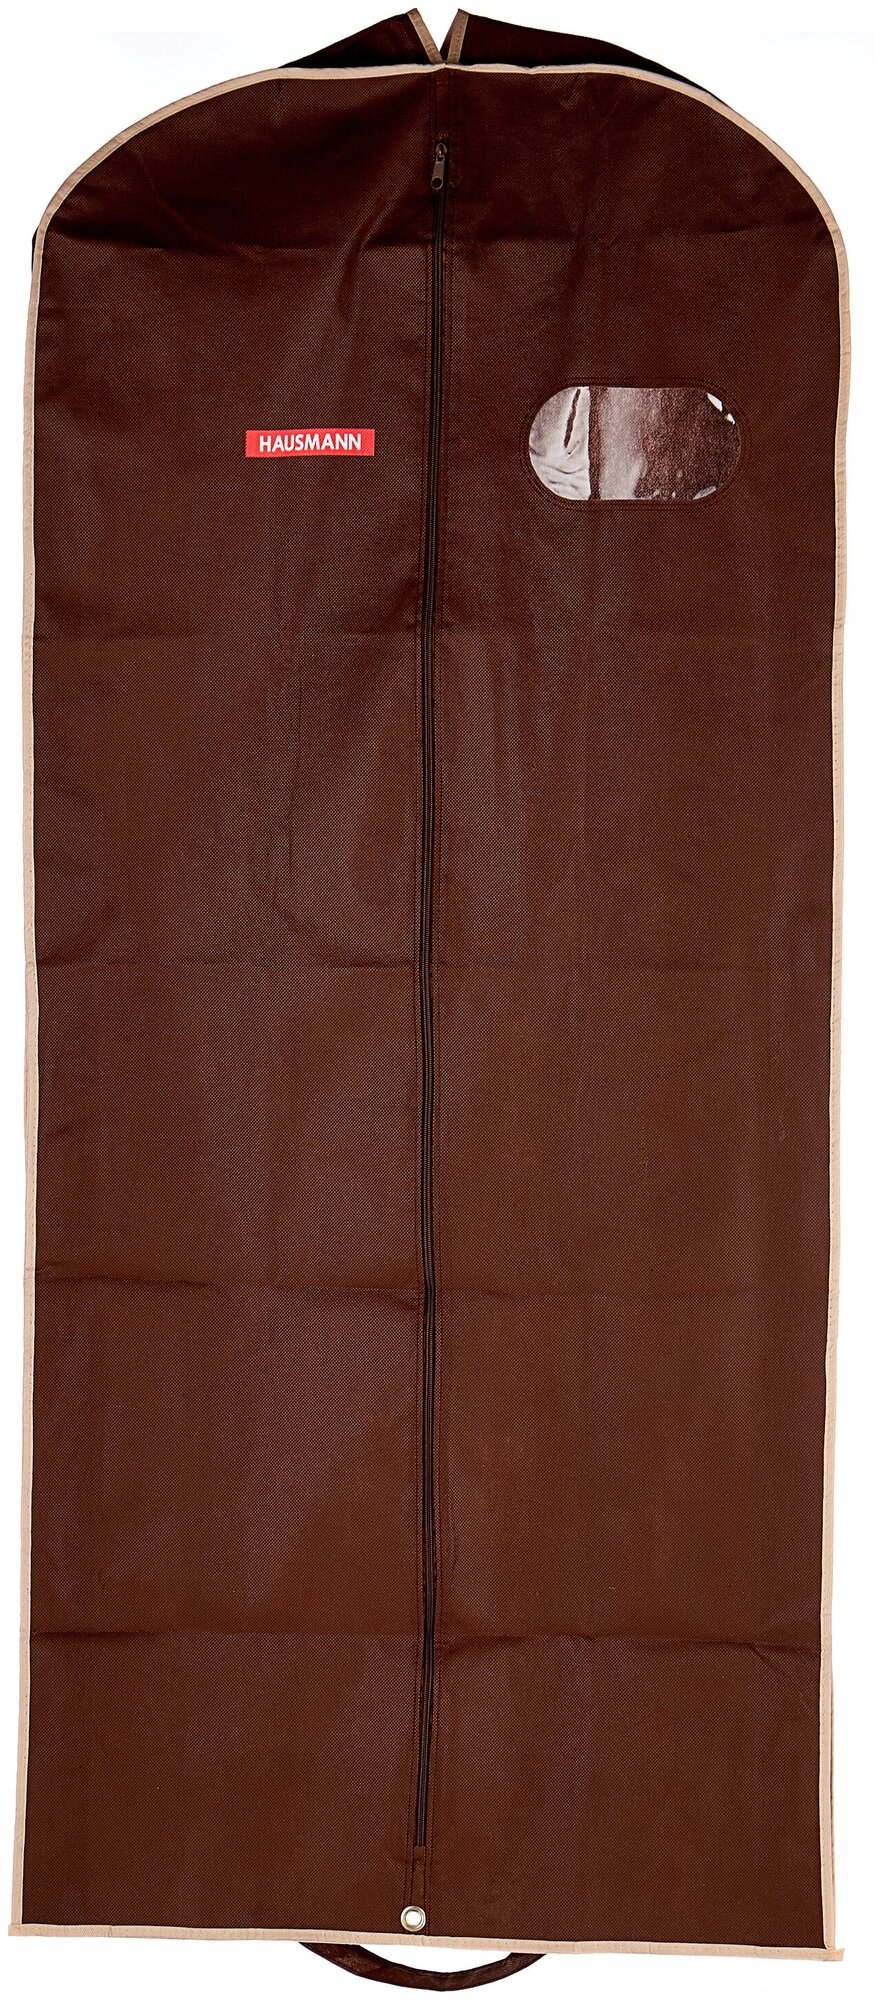 HM-701403CB Чехол для одежды объемный Hausmann с овальным окном ПВХ и ручками 60*140*10, коричневый